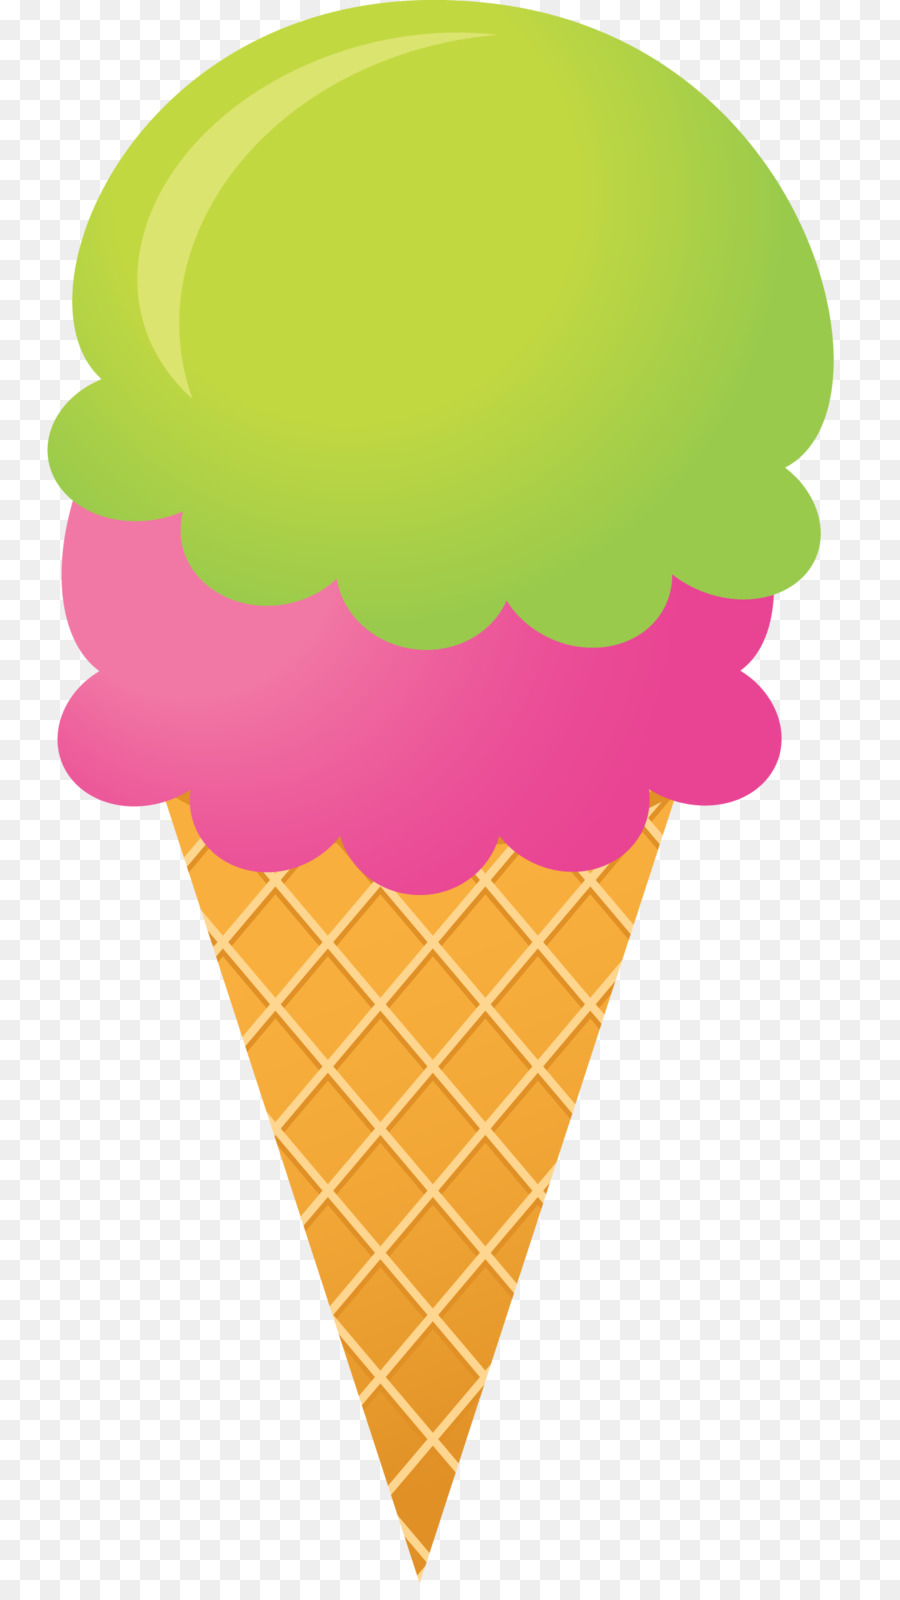 Ice Cream Cones Gelato Sundae - ice cream silhouette png download - 1374*2416 - Free Transparent Ice Cream Cones png Download.